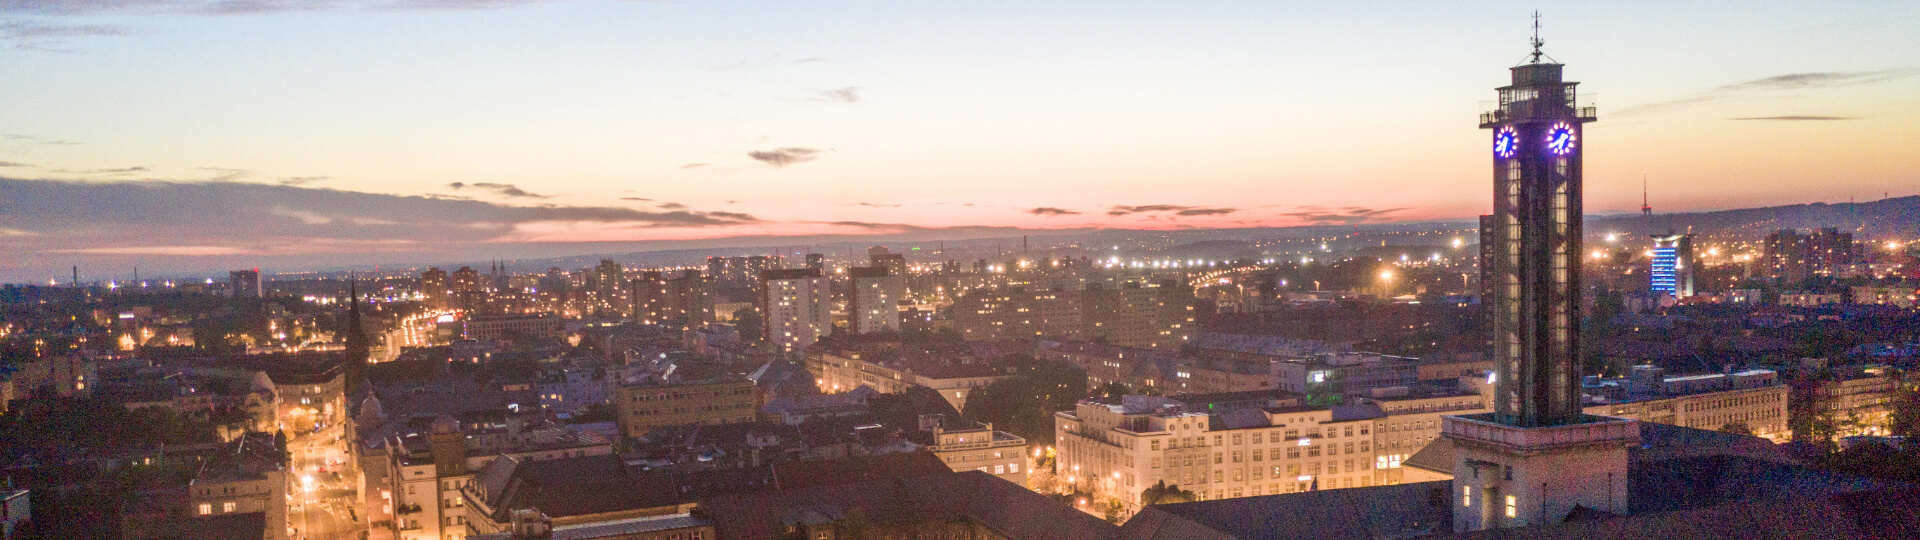 ilustrační foto - letecký pohled na Ostravu